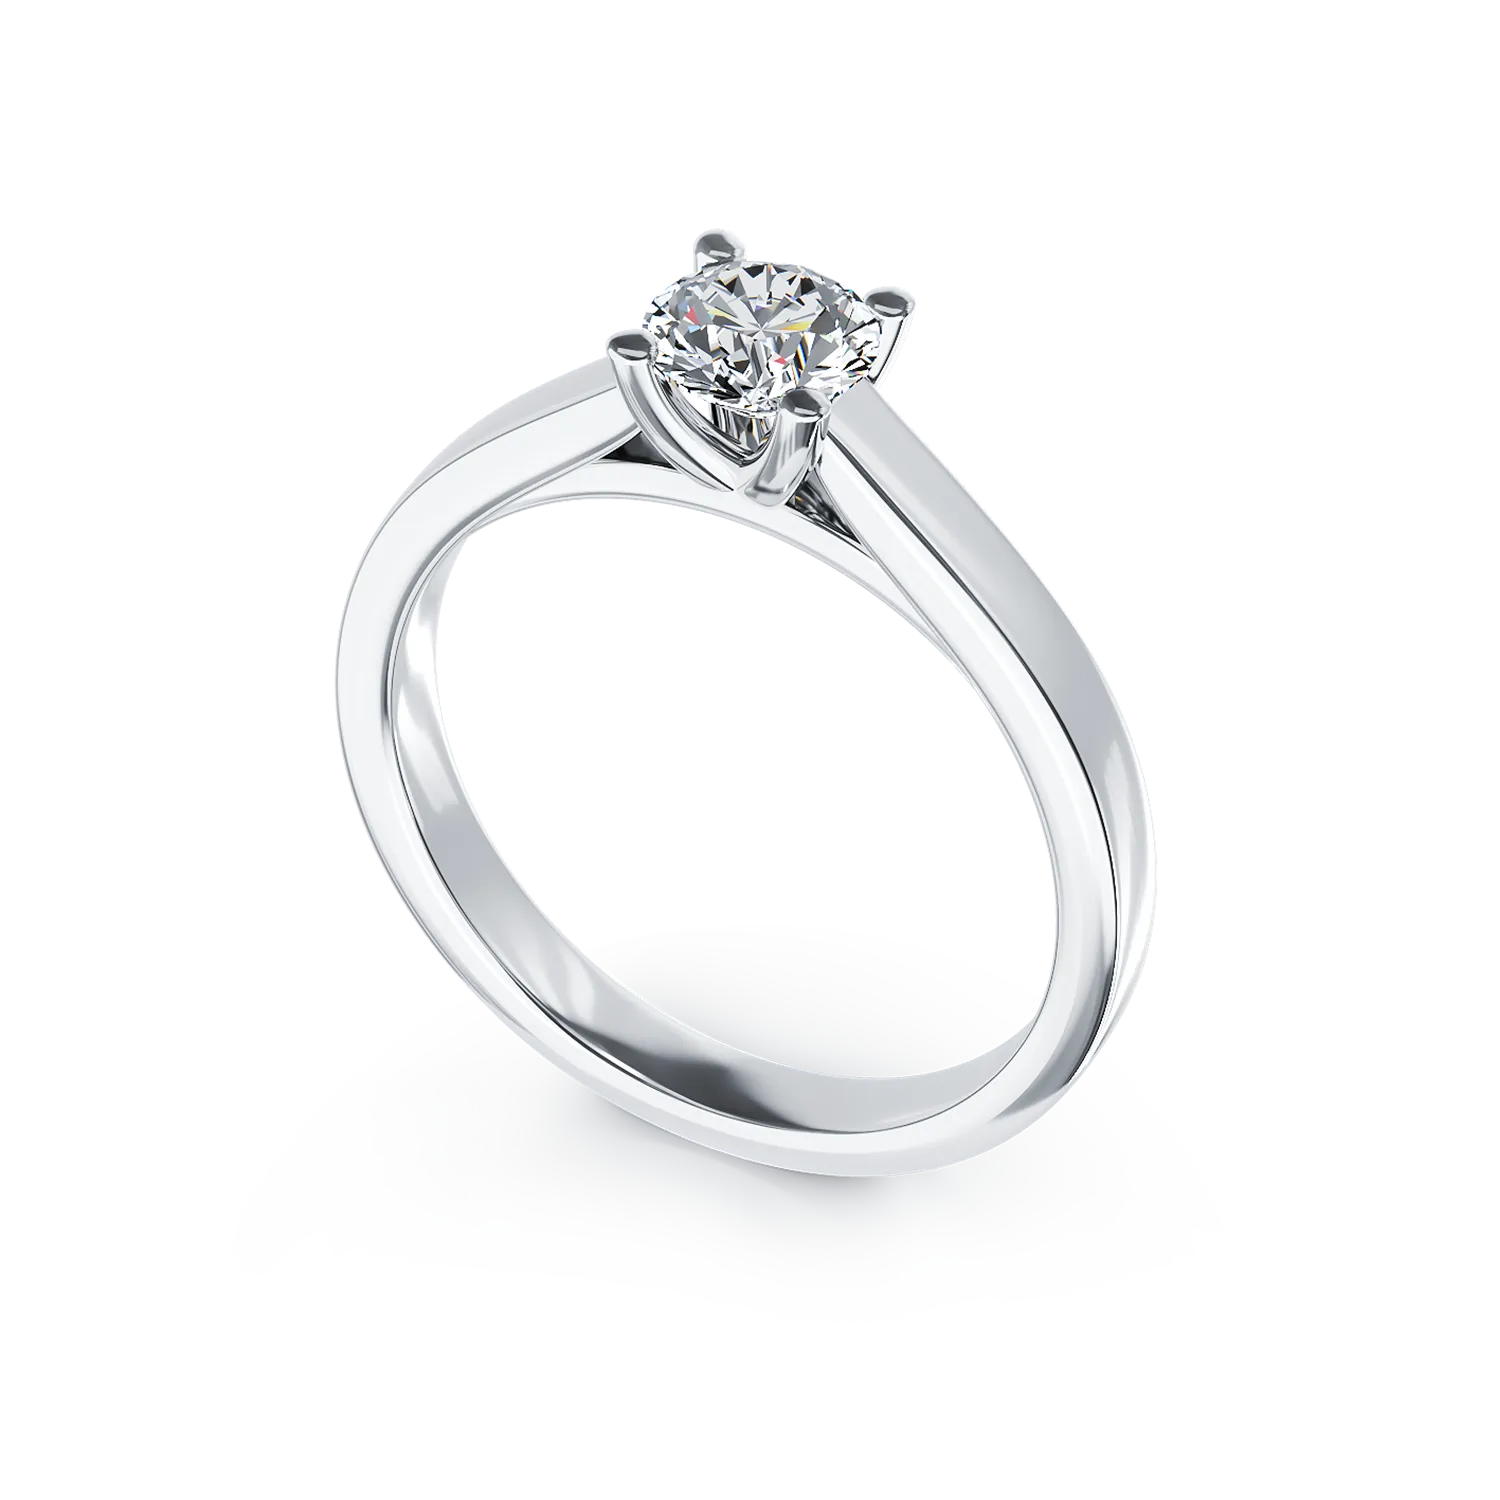 Eljegyzési gyűrű 18K-os fehér aranyból 0,5ct gyémánttal. Gramm: 4,3